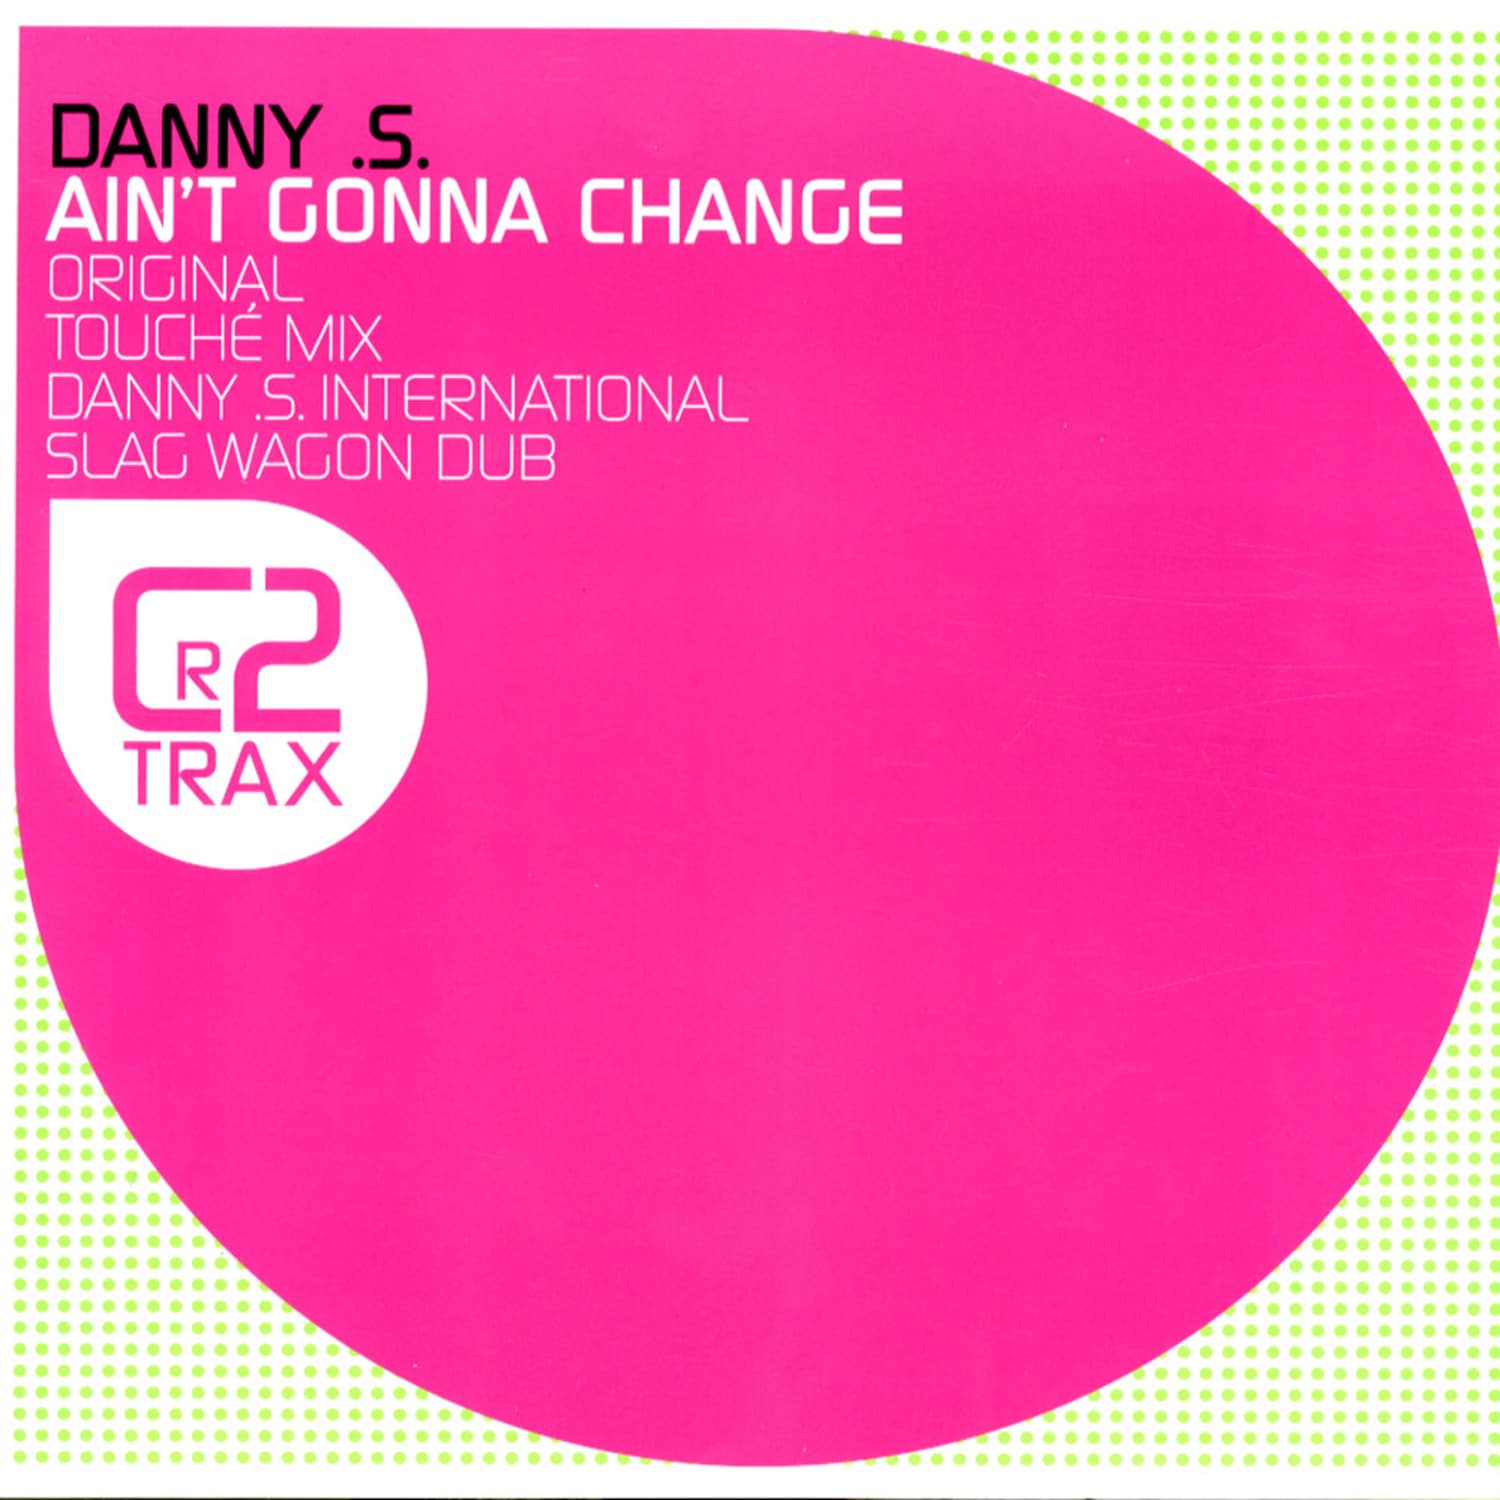 Danny S - AINT GONNA CHANGE